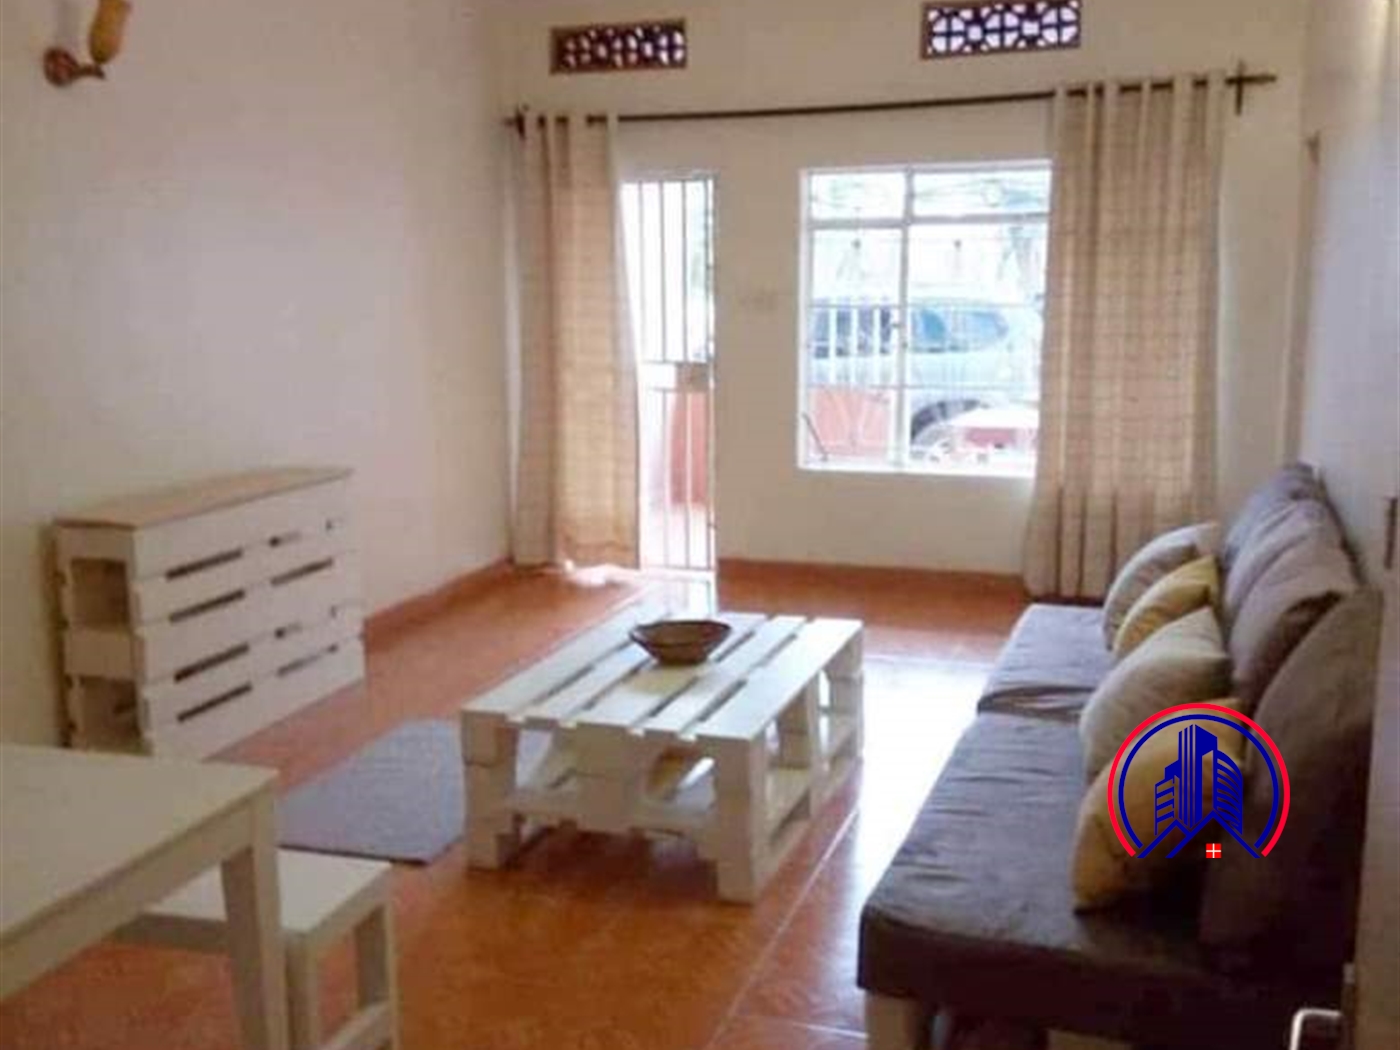 Apartment for rent in Mawandaroad Kampala